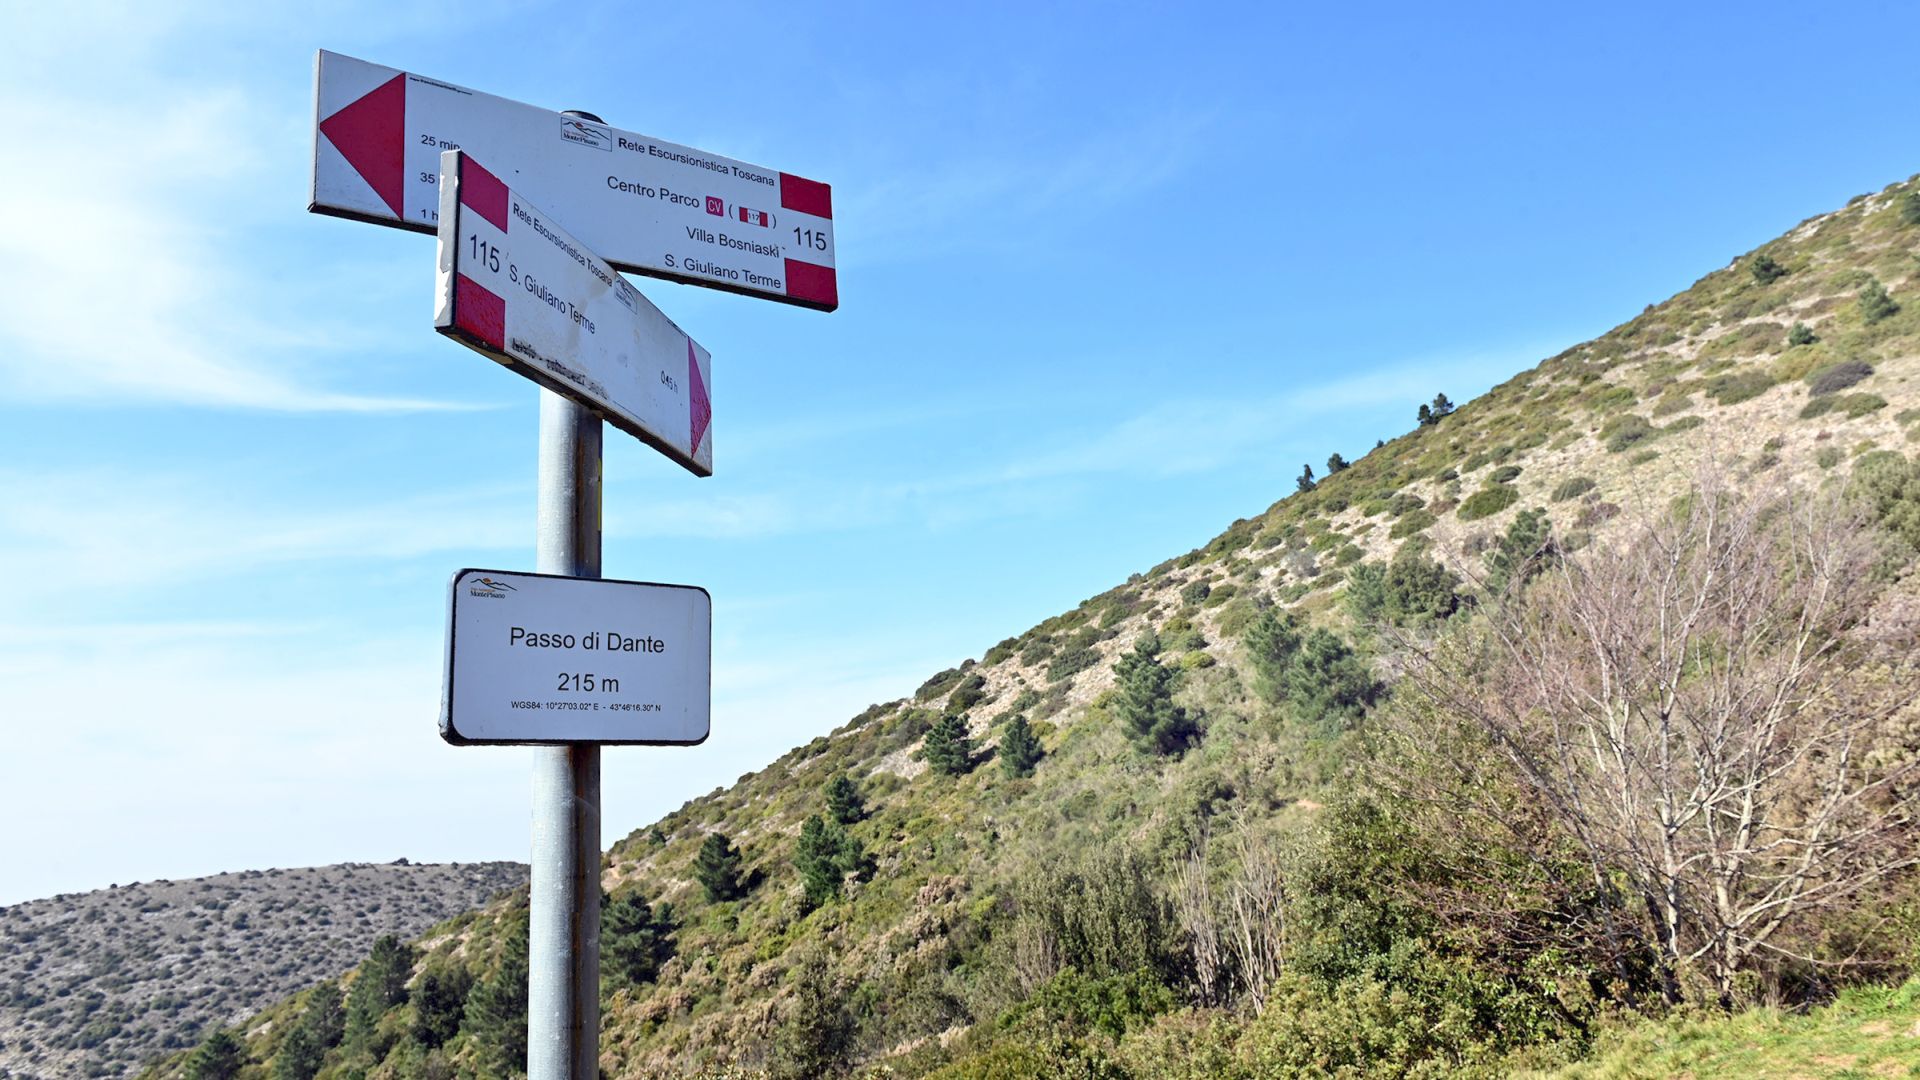 signposting at the Passo di Dante